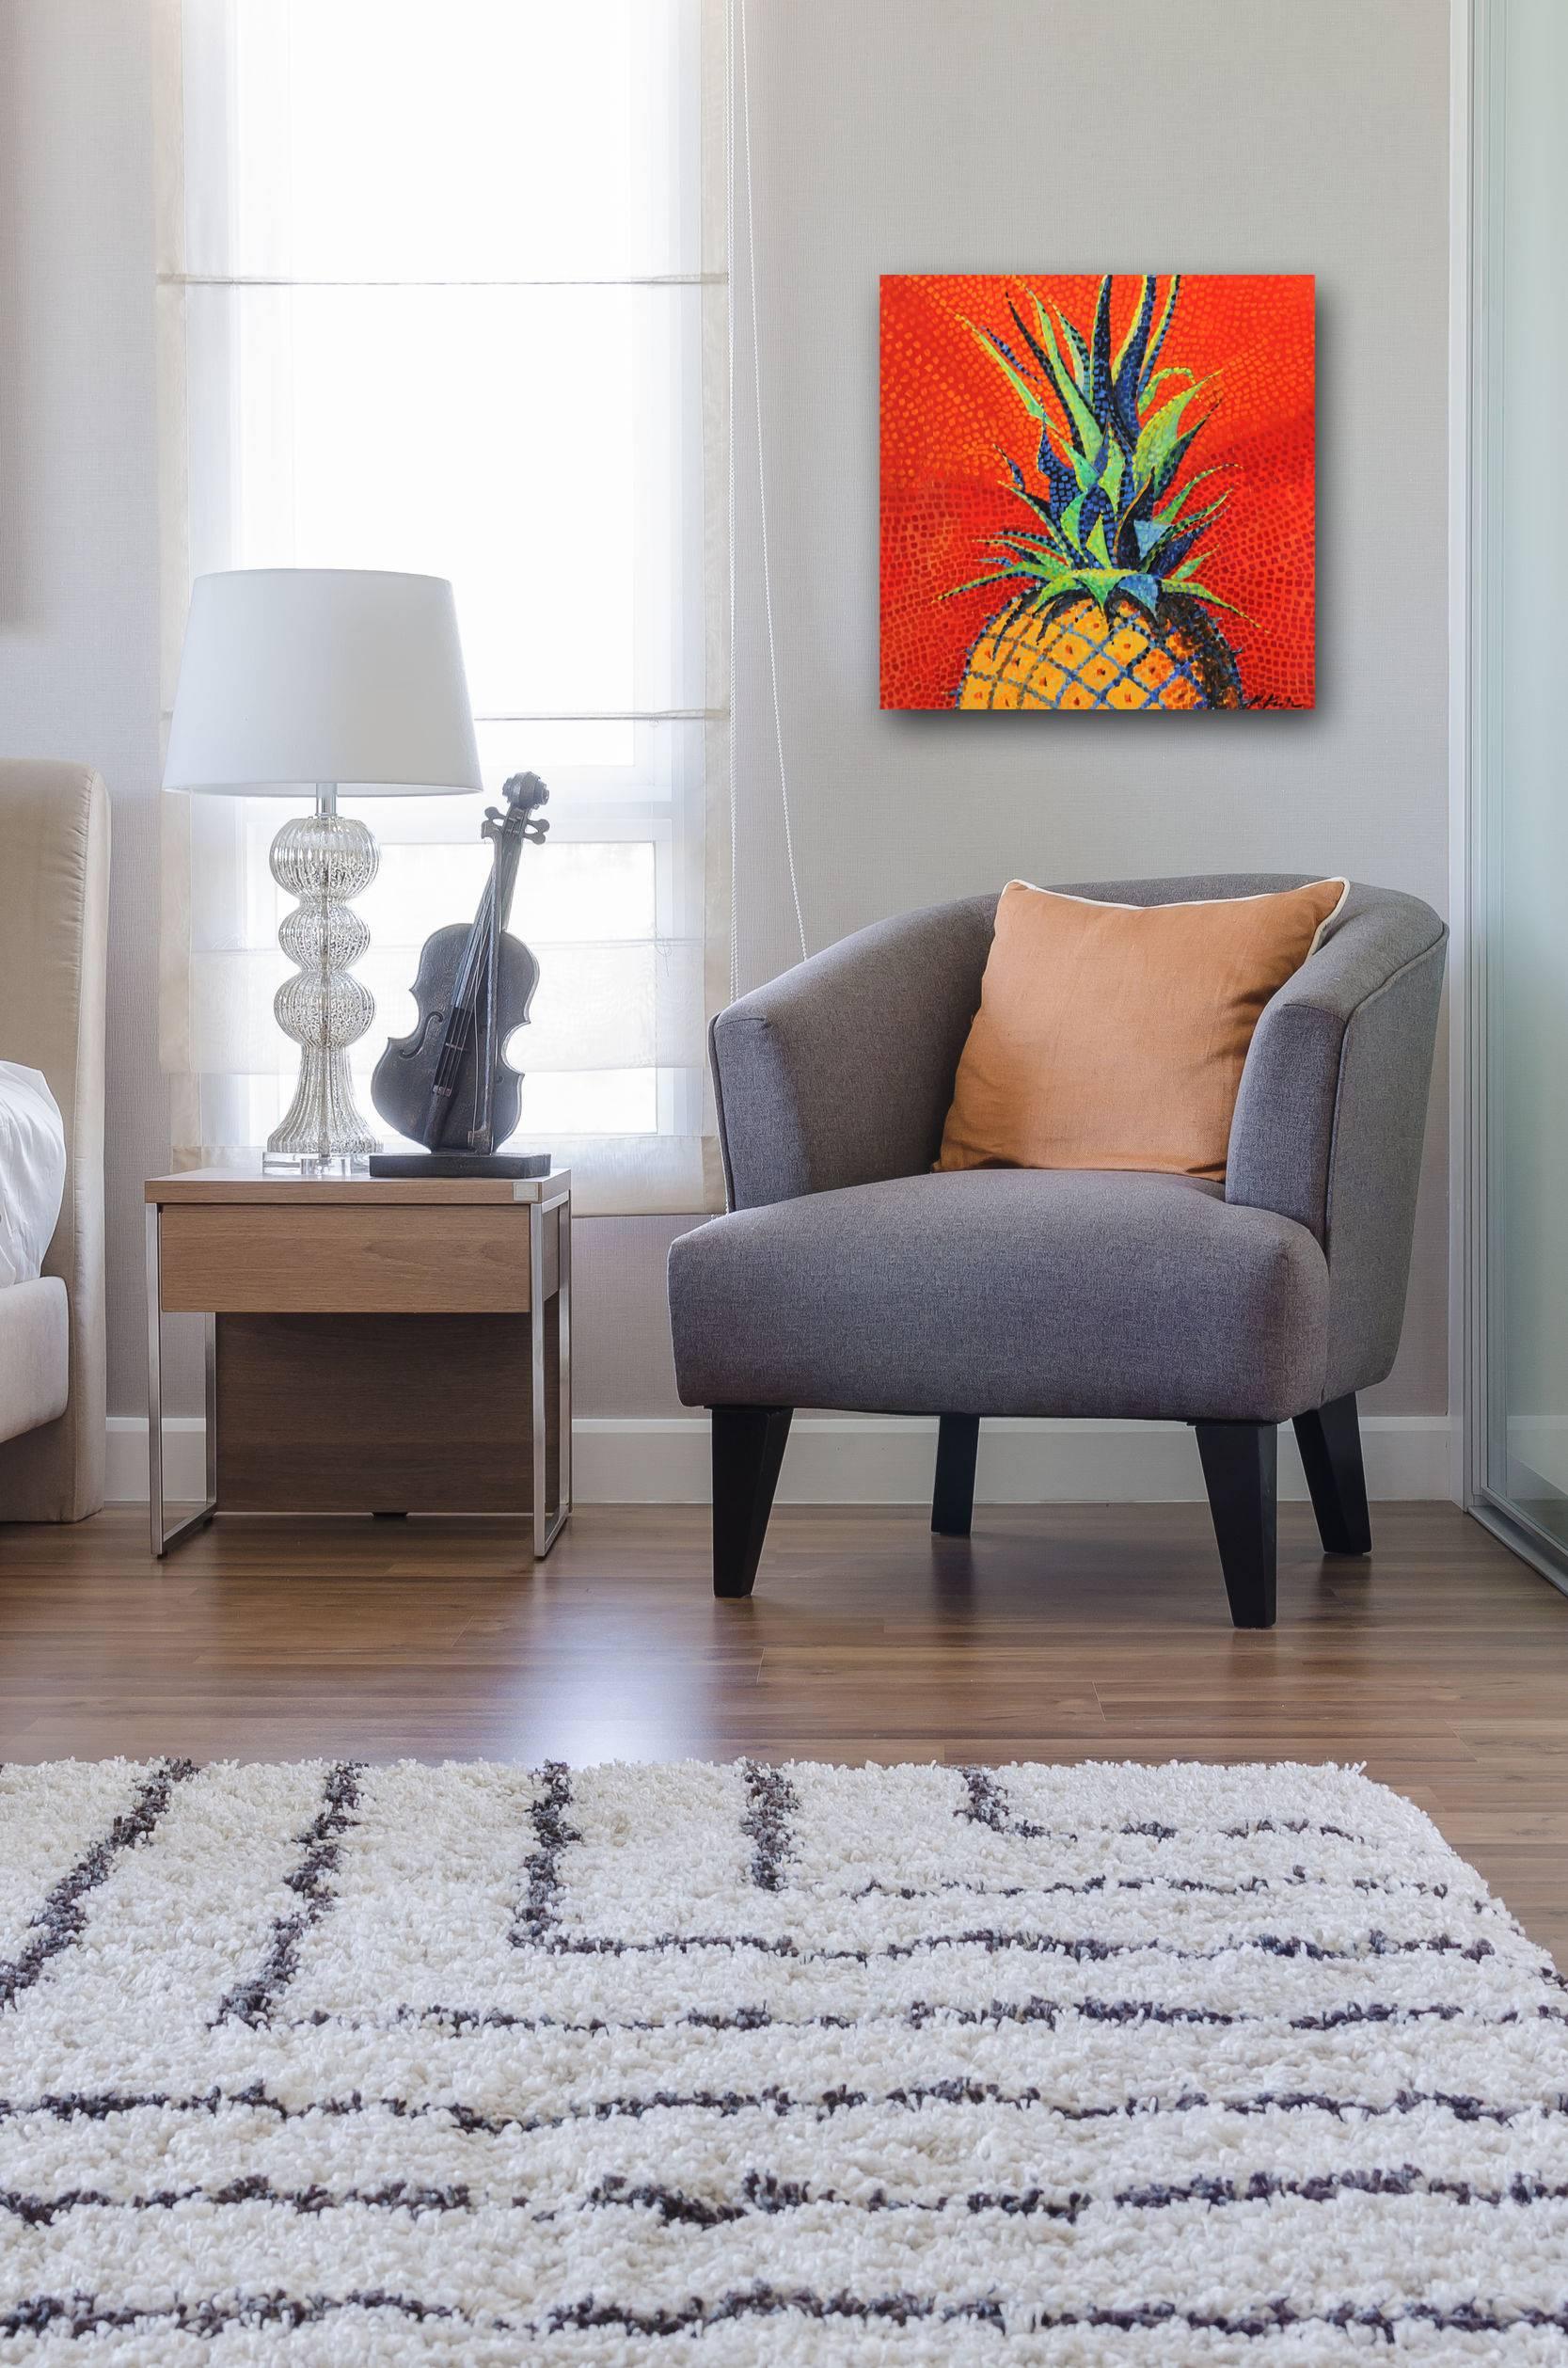 Pineapple - Painting by Kathleen Keifer